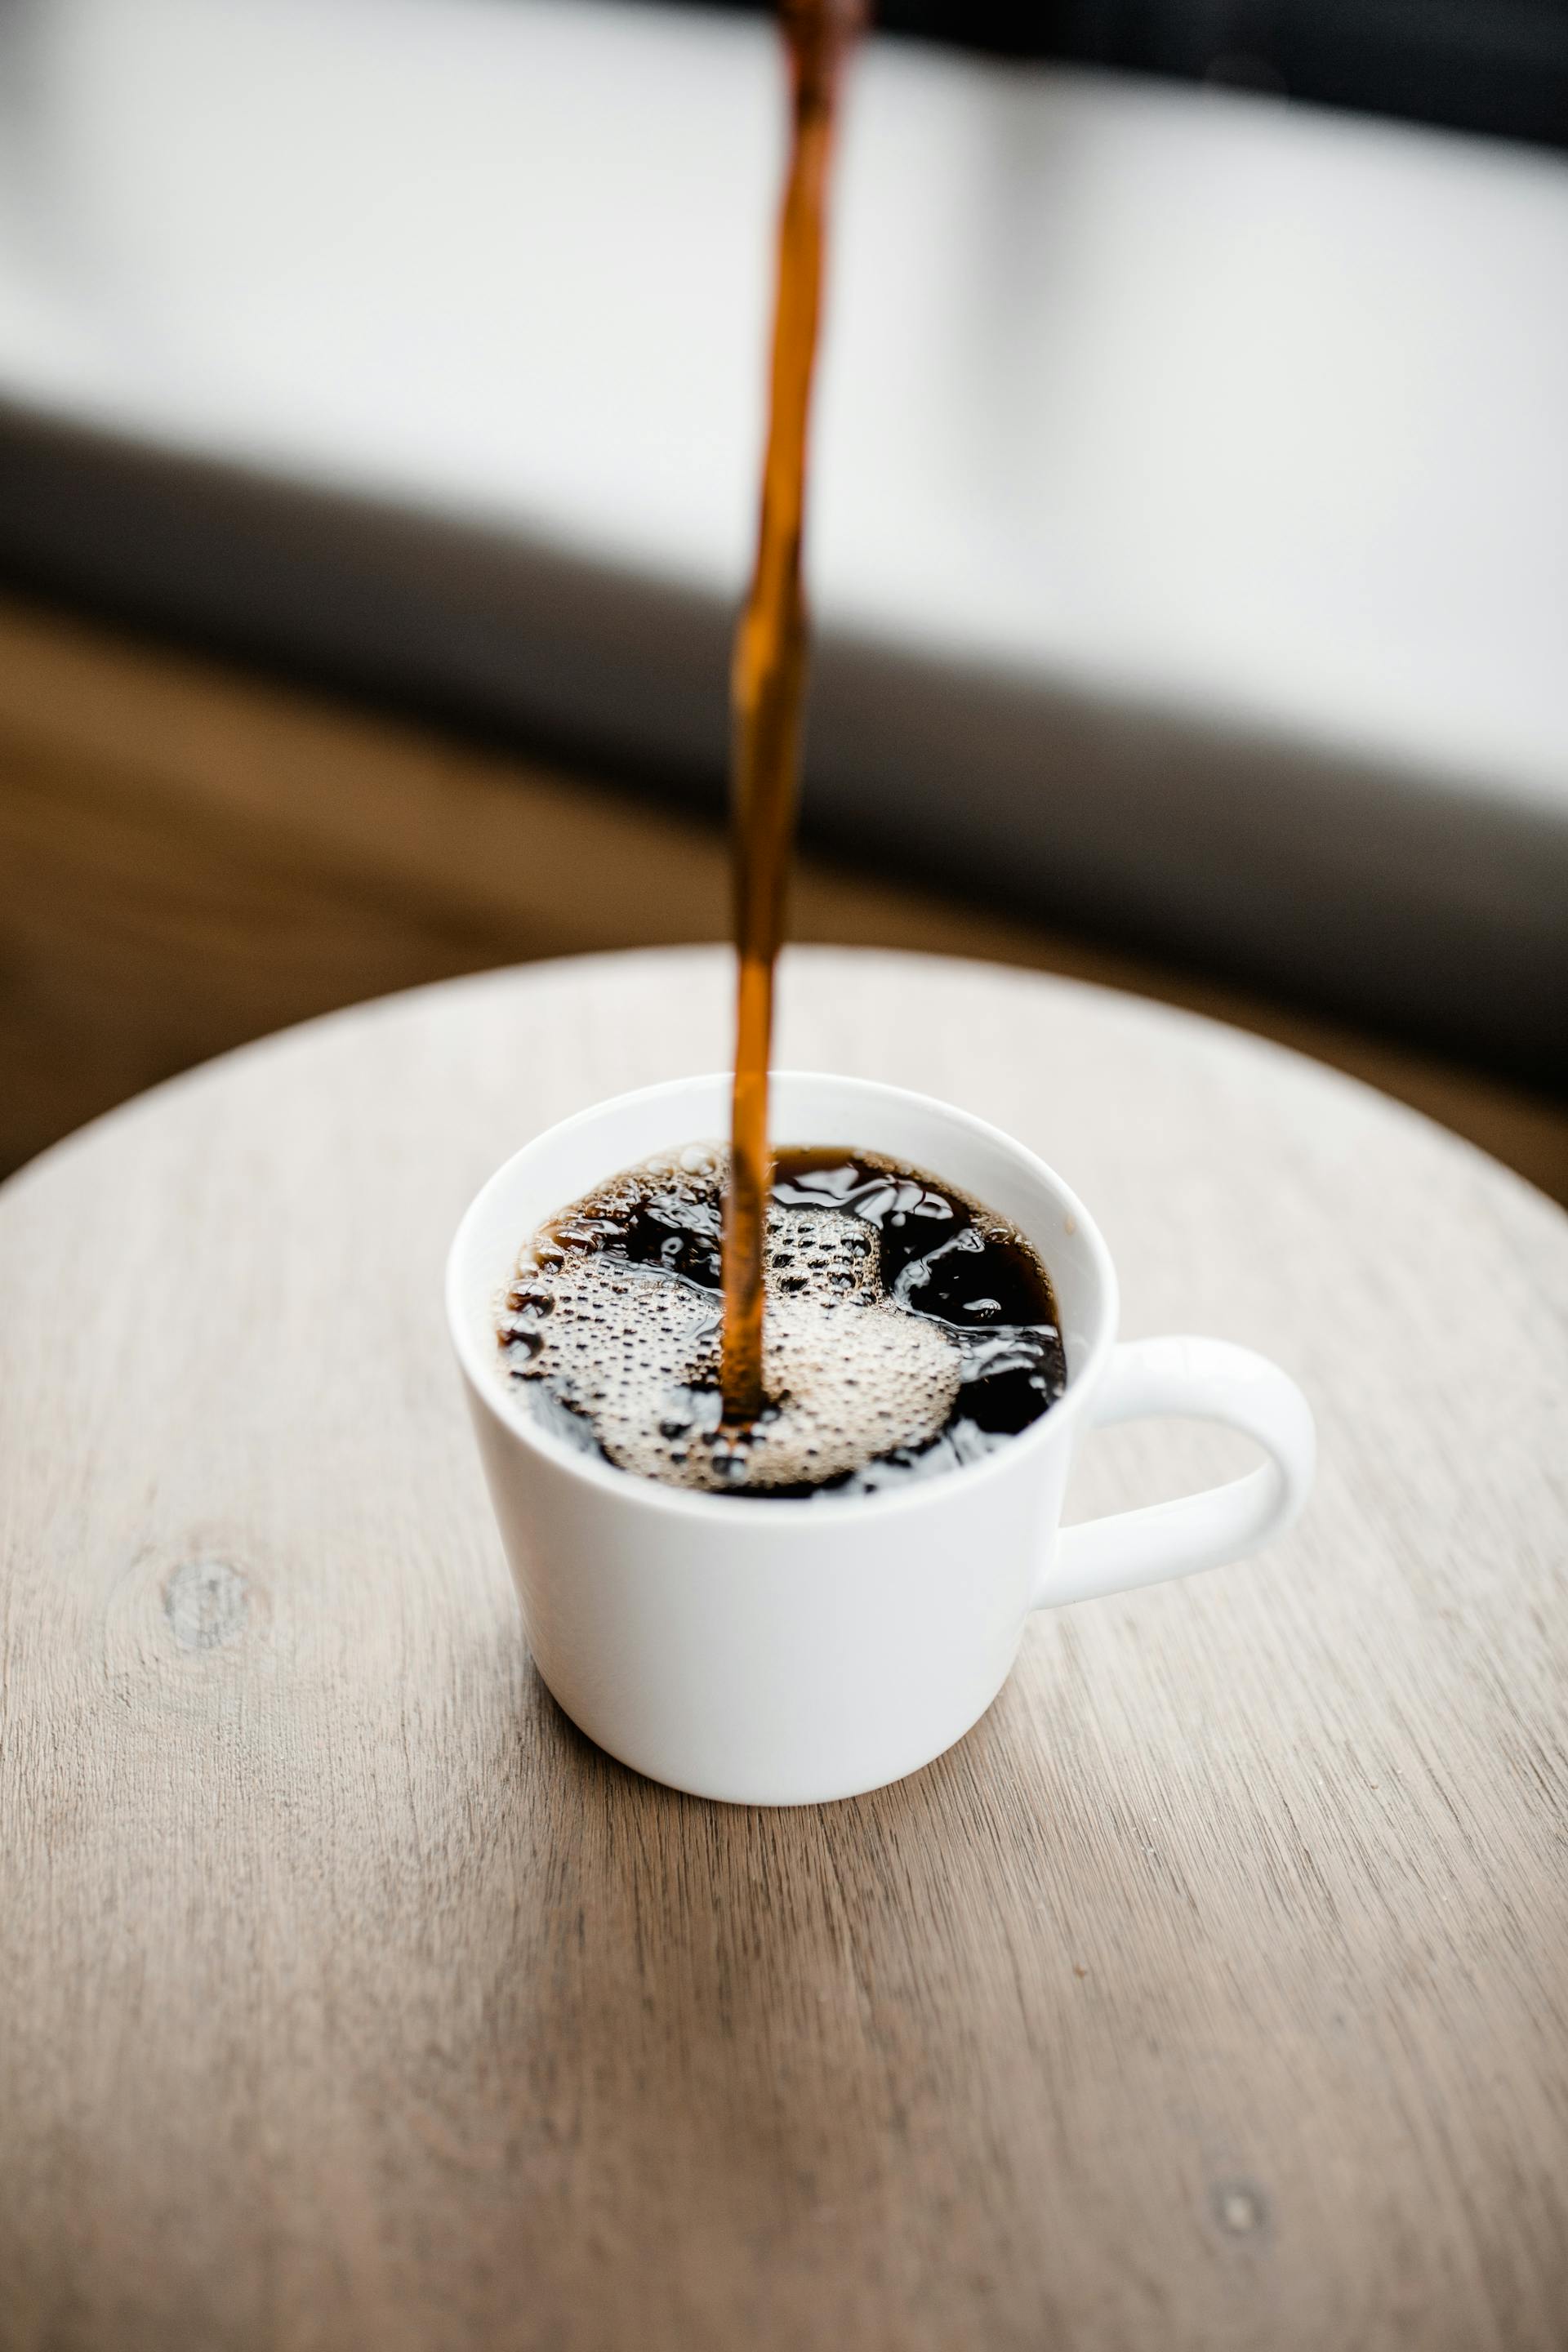 Kaffee wird in eine Tasse gegossen | Quelle: Pexels